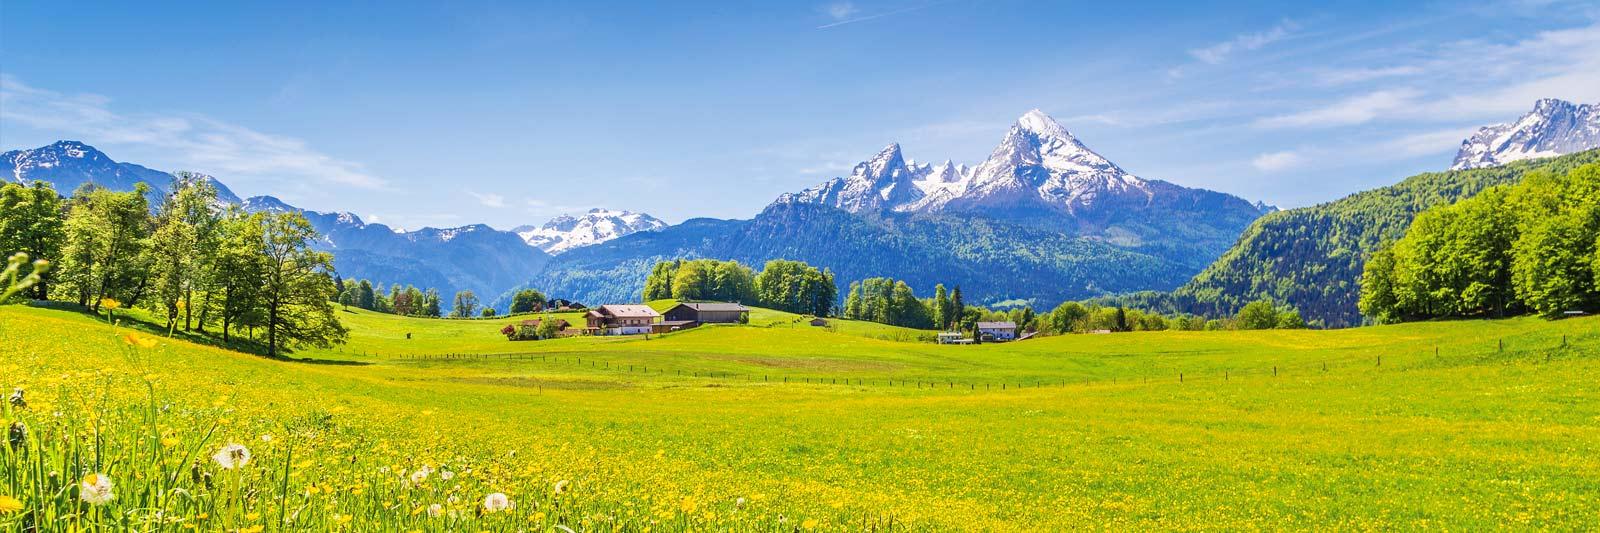 16 Ferienwohnungen und Ferienhäuser in Lech am Arlberg - tourist-online.de